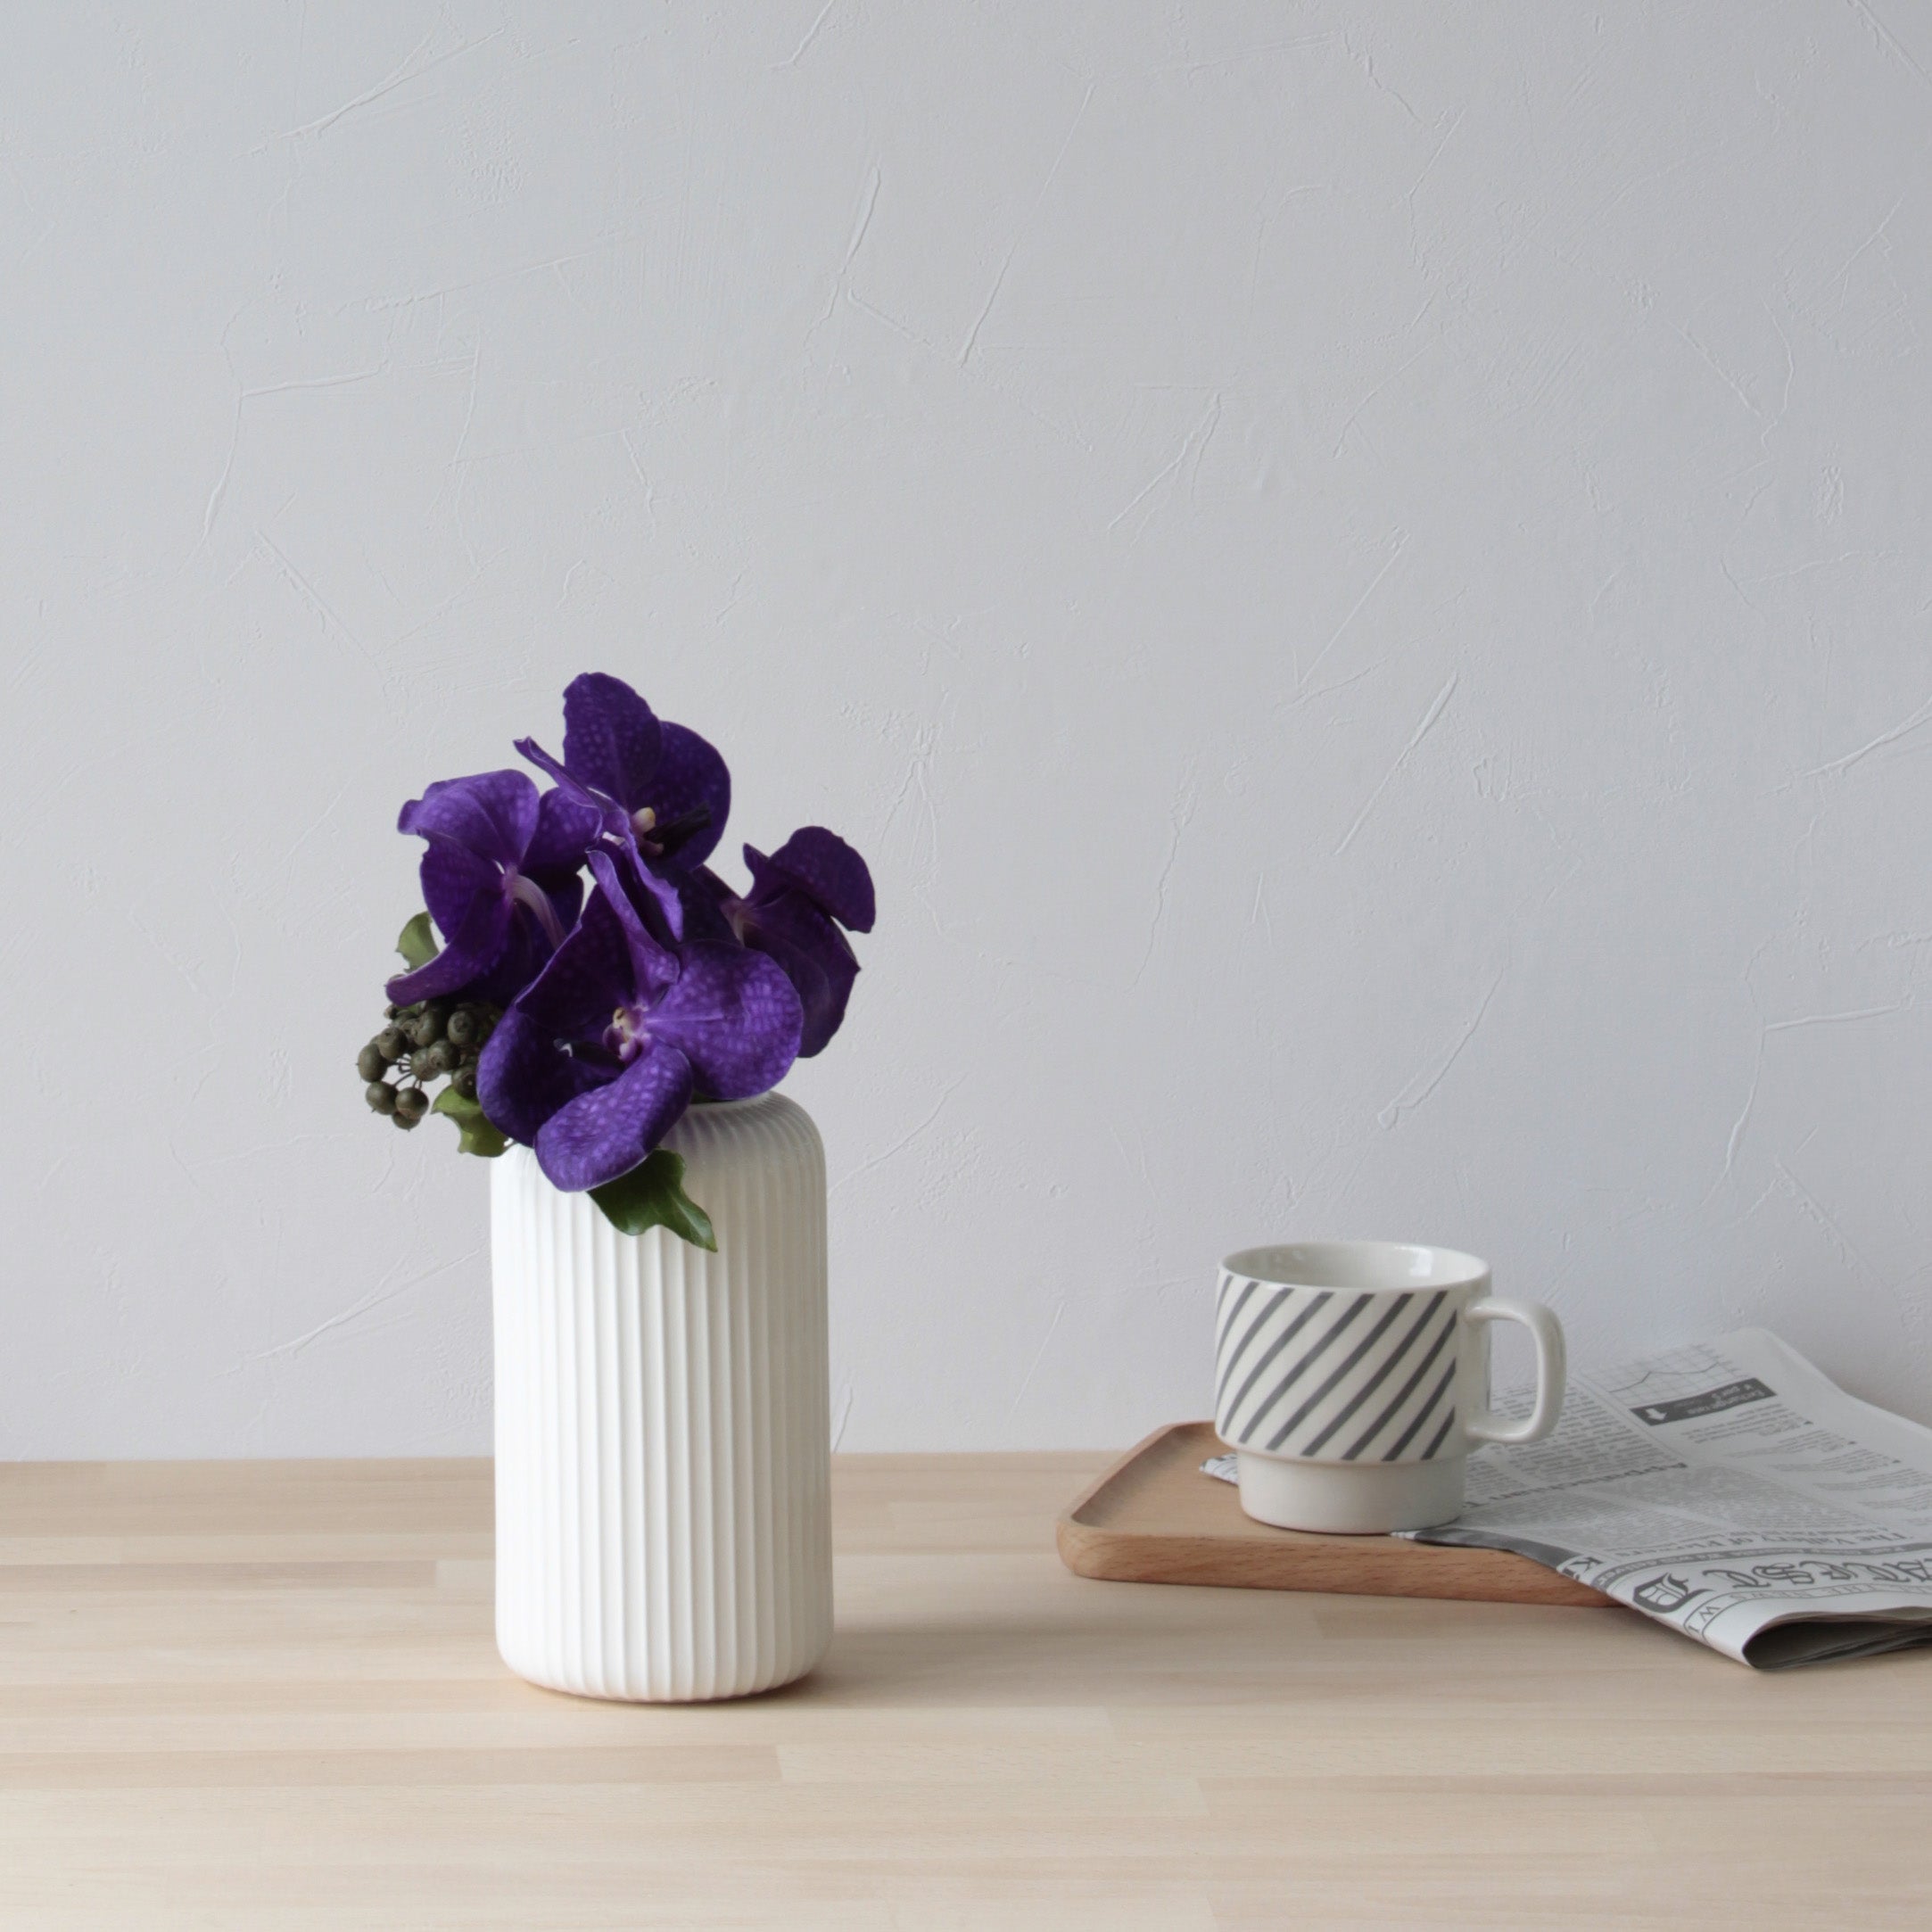 縦のラインが際立つシンプルな白い花瓶【Calm - カルム】